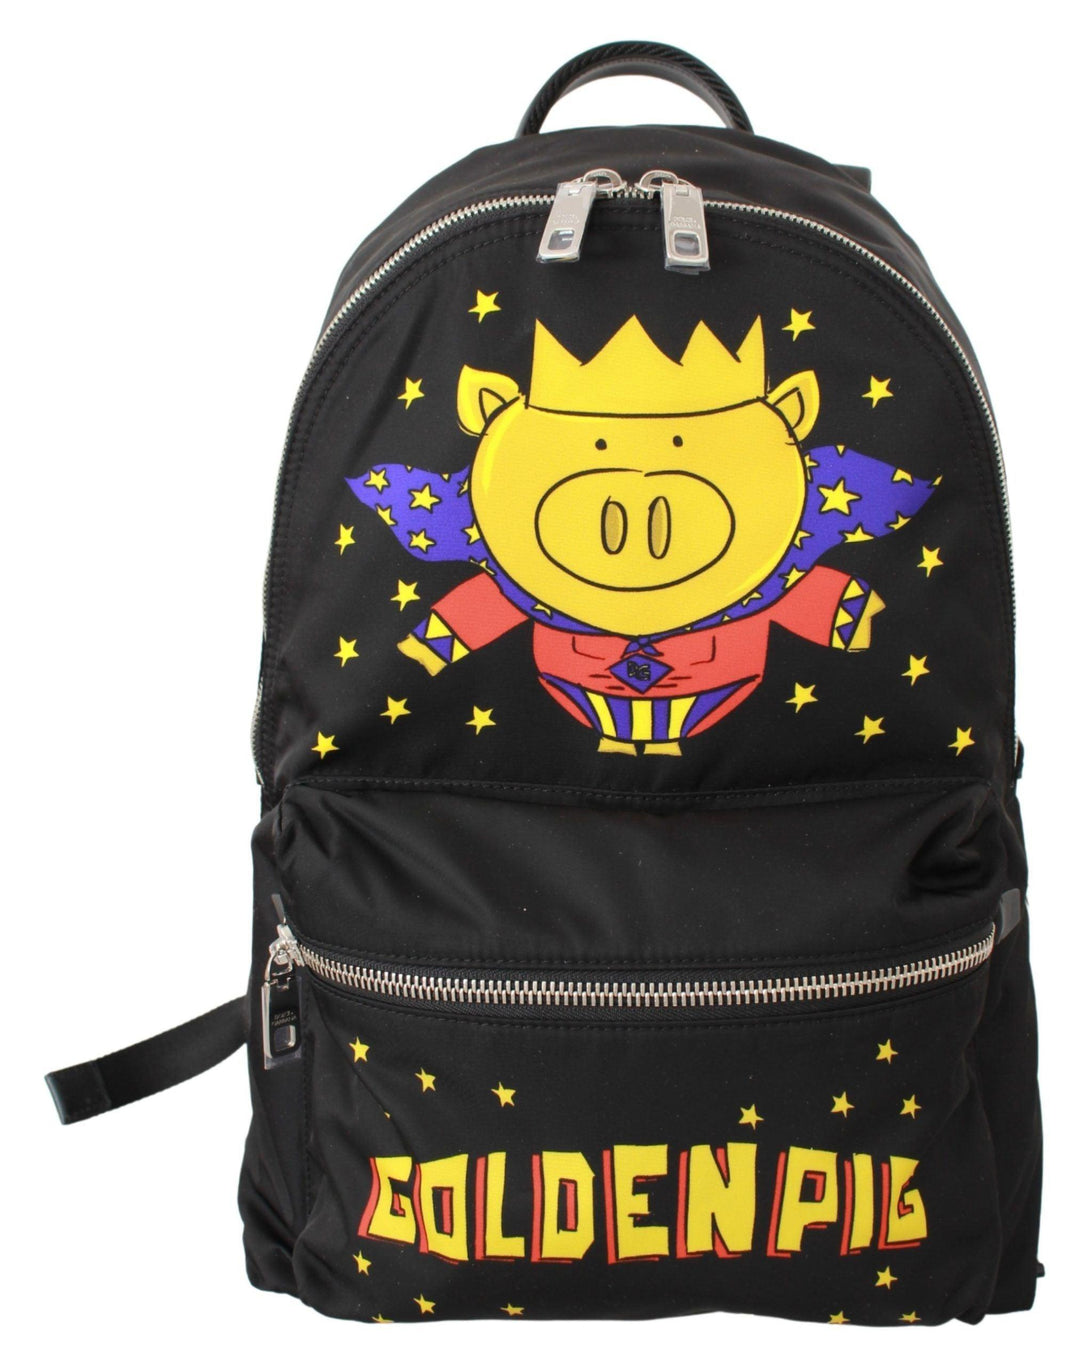 Dolce & Gabbana Black Golden Pig of the Year School Backpack - Ellie Belle